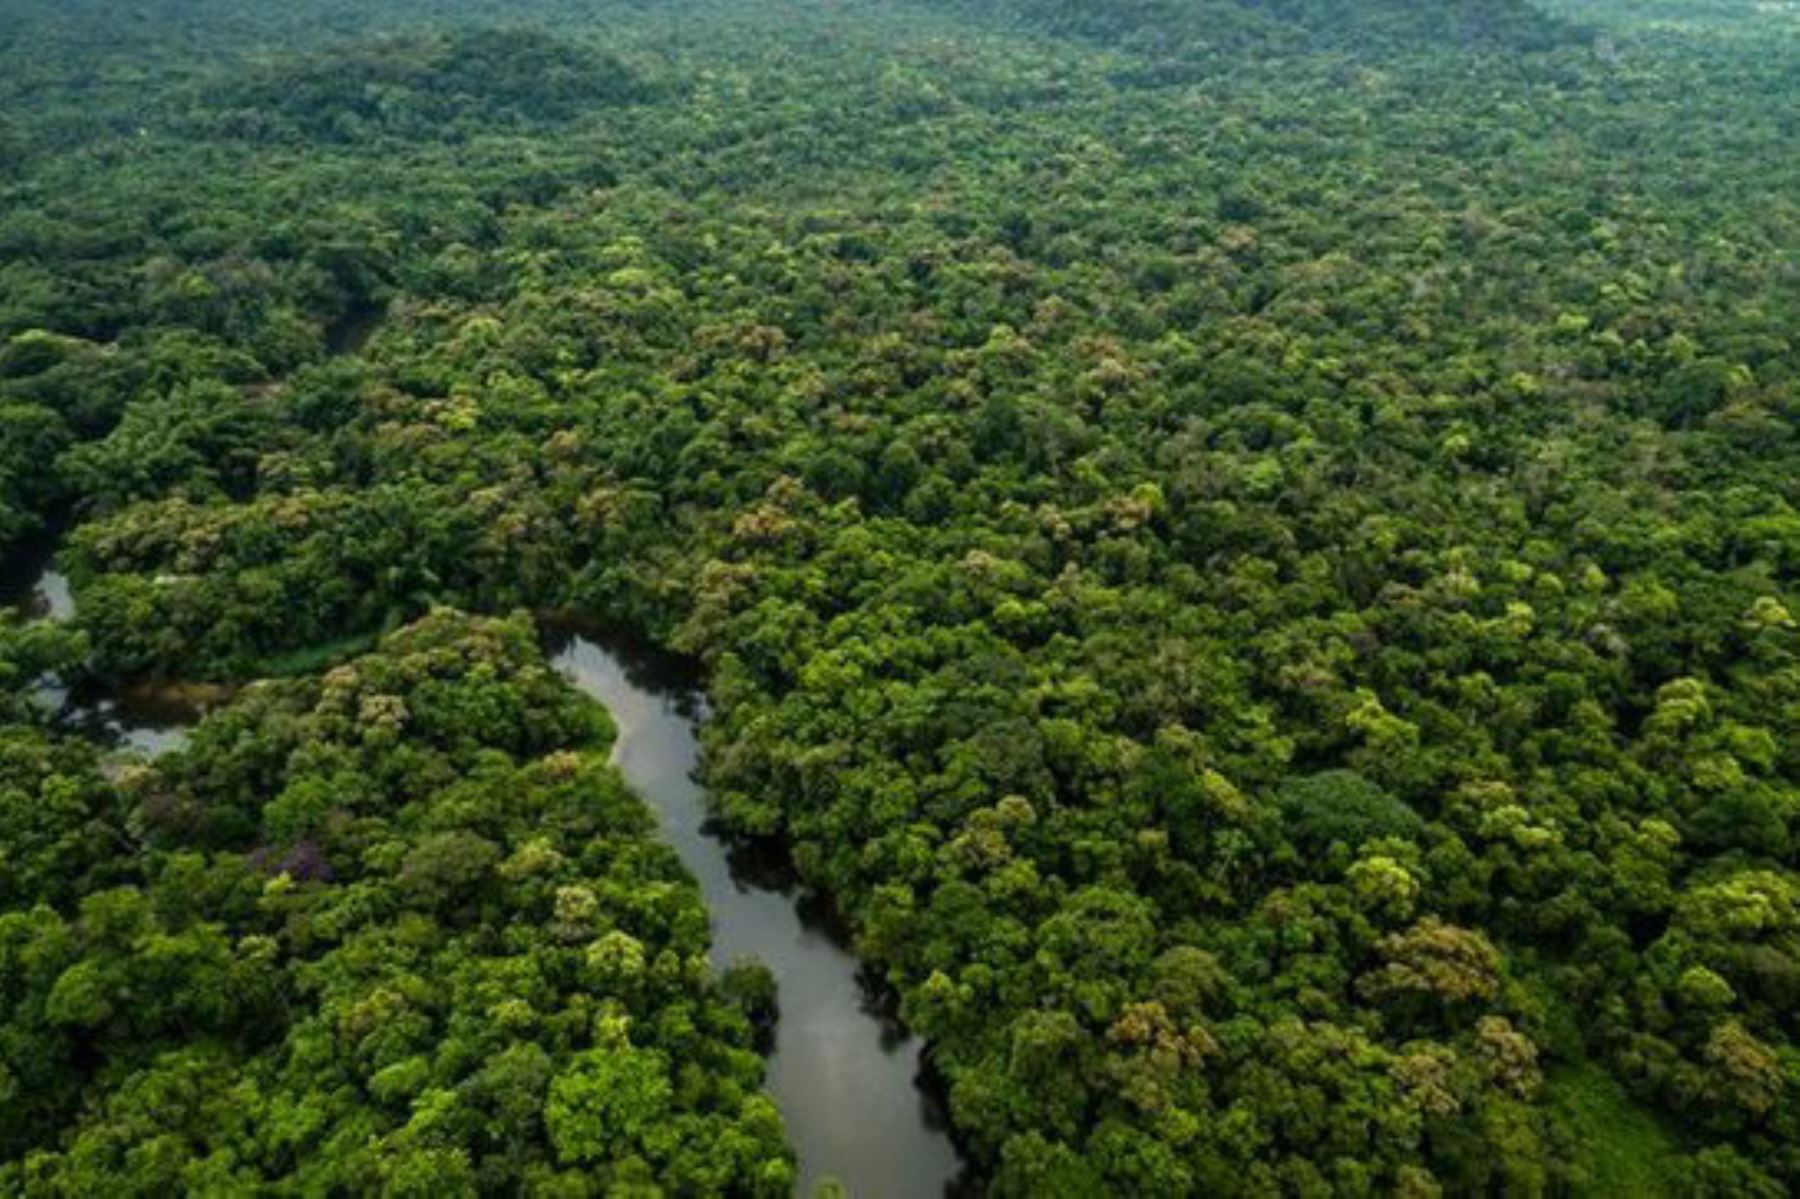 El Minam informó que la deforestación de bosques húmedos amazónicos en Perú significó una reducción de 4.7 % en comparación a lo reportado en el 2018.